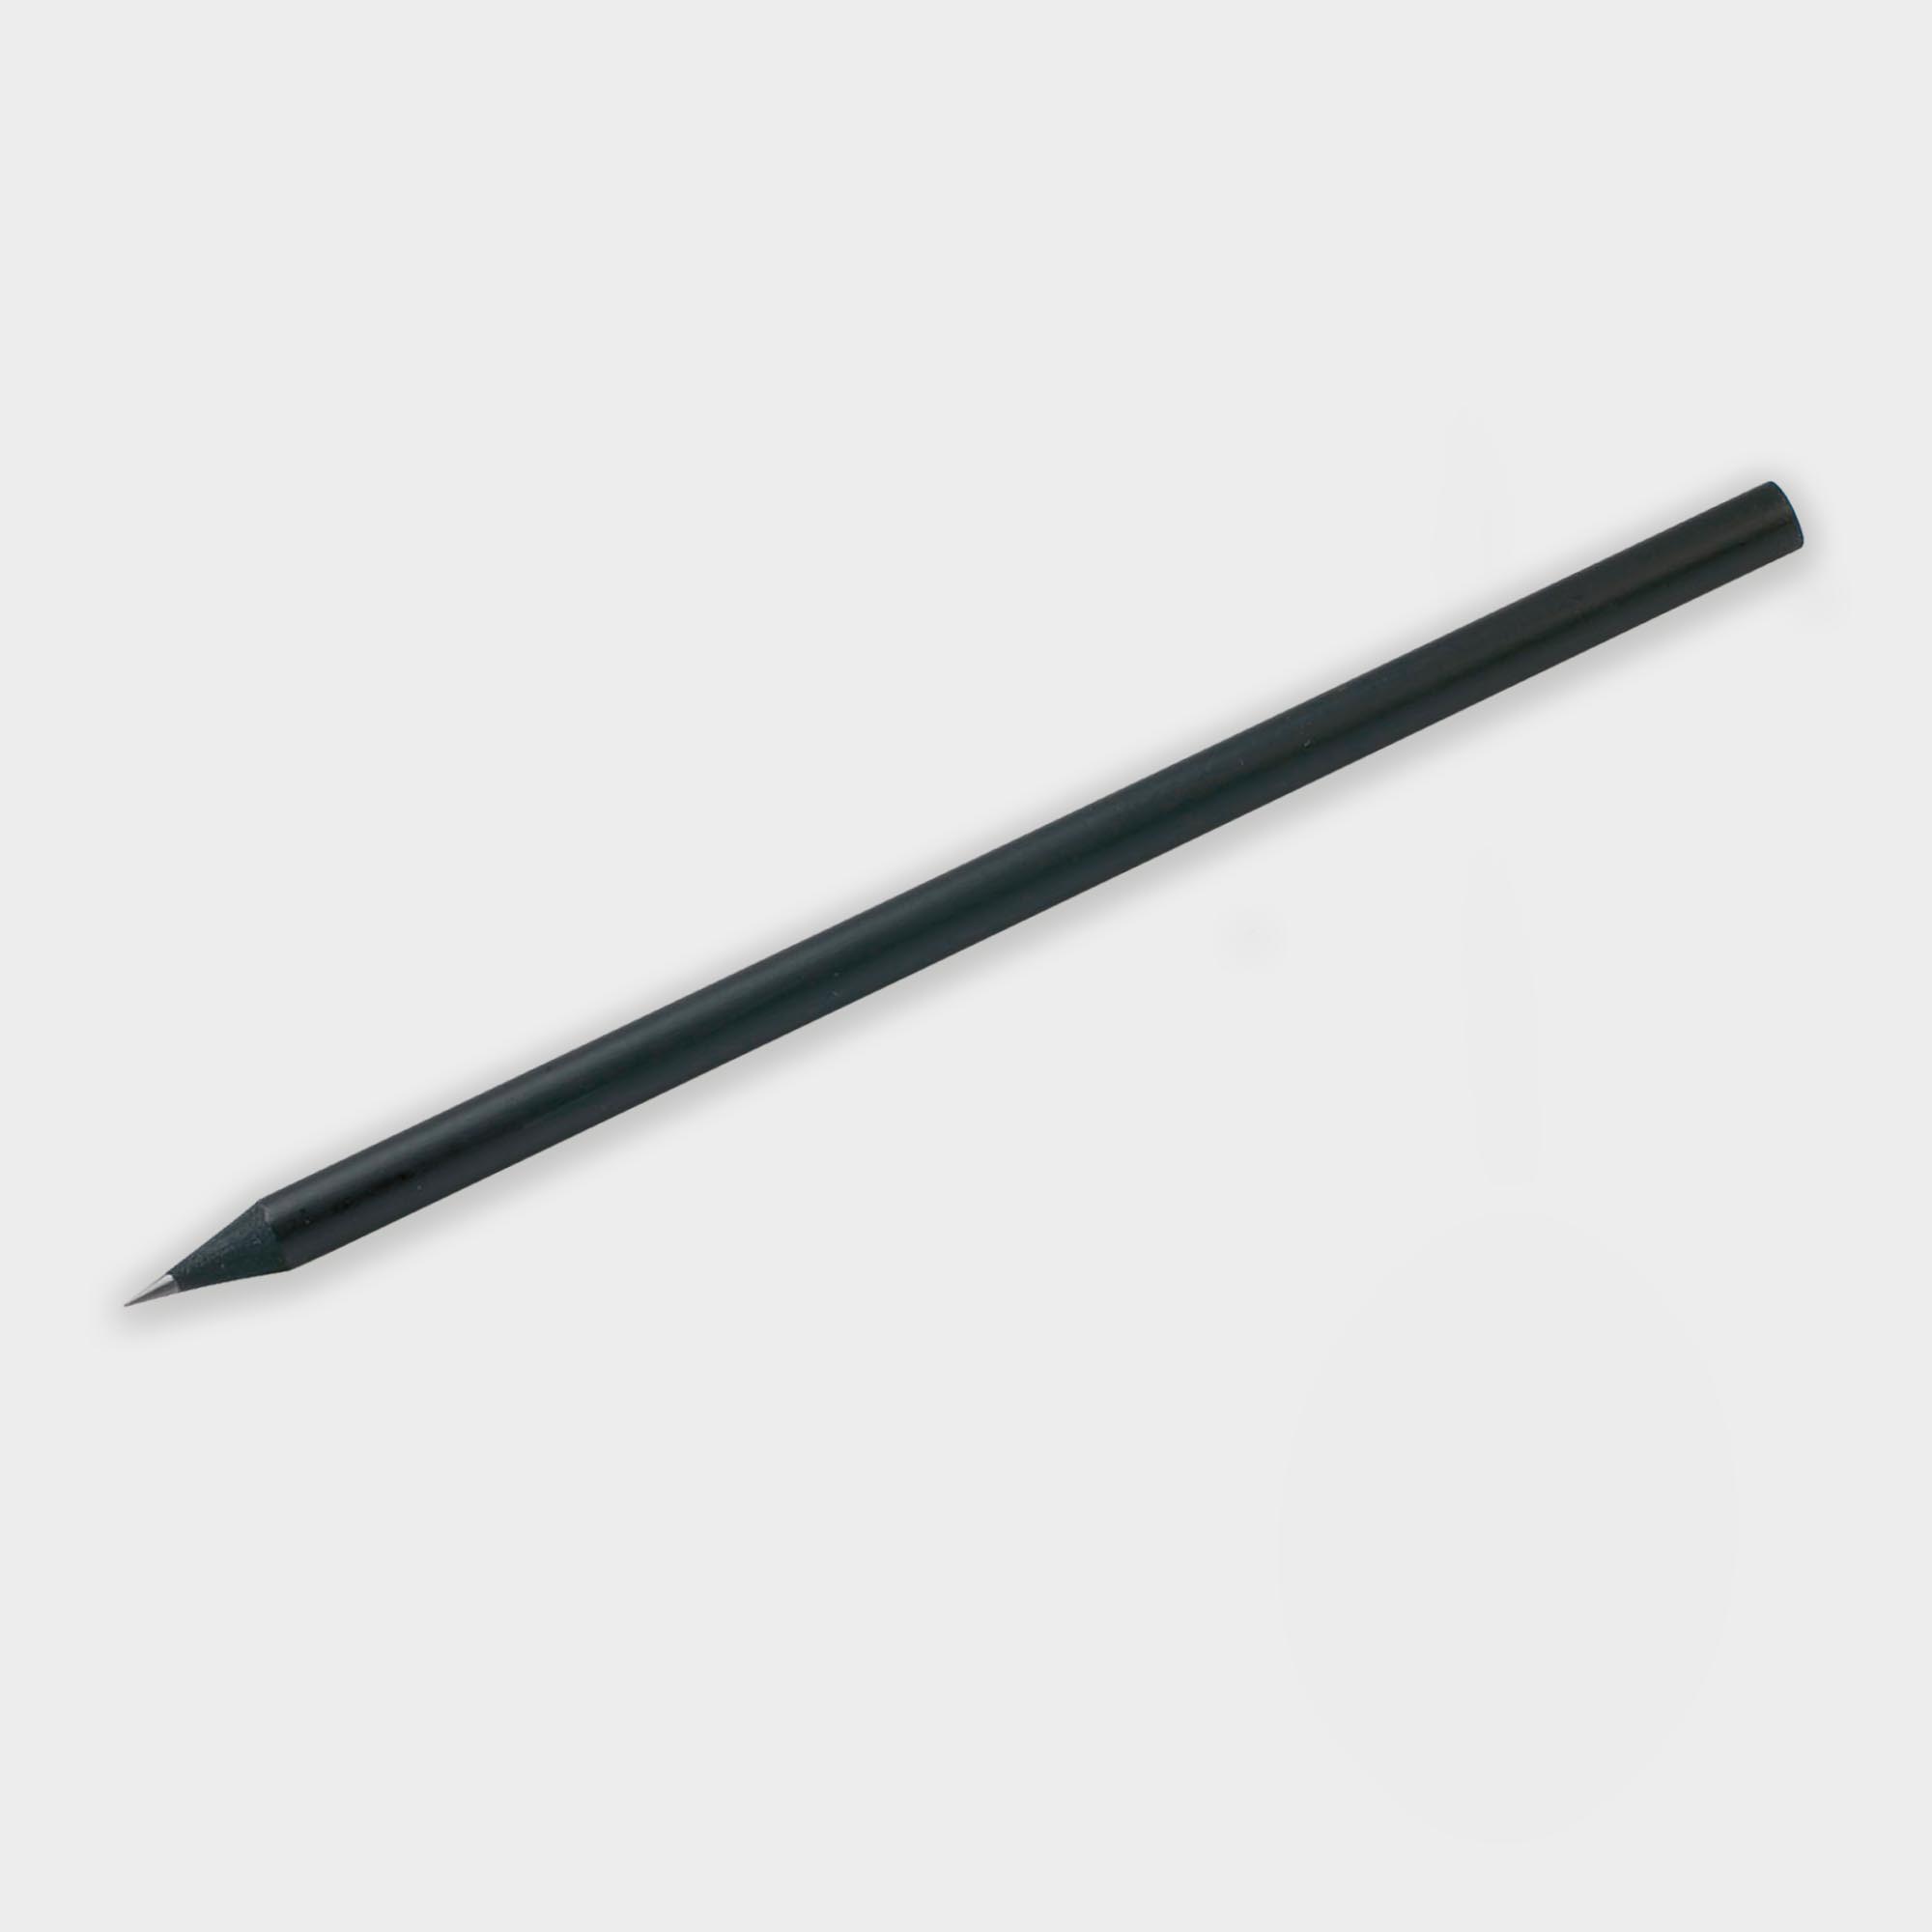 Promotional Wooden Black Pencil without Eraser - FSC